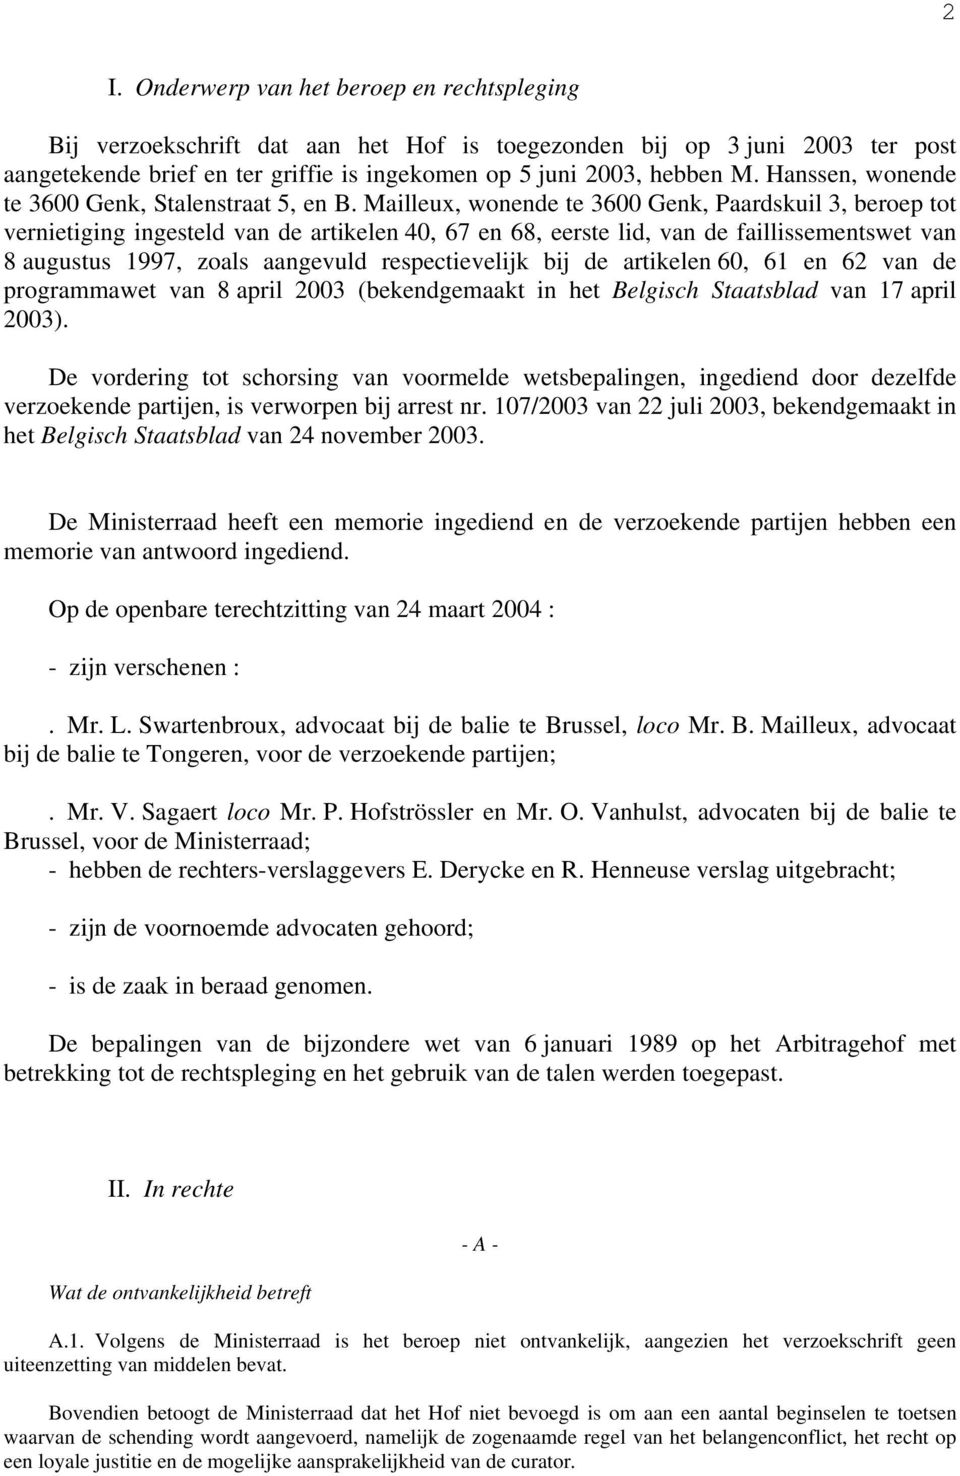 Mailleux, wonende te 3600 Genk, Paardskuil 3, beroep tot vernietiging ingesteld van de artikelen 40, 67 en 68, eerste lid, van de faillissementswet van 8 augustus 1997, zoals aangevuld